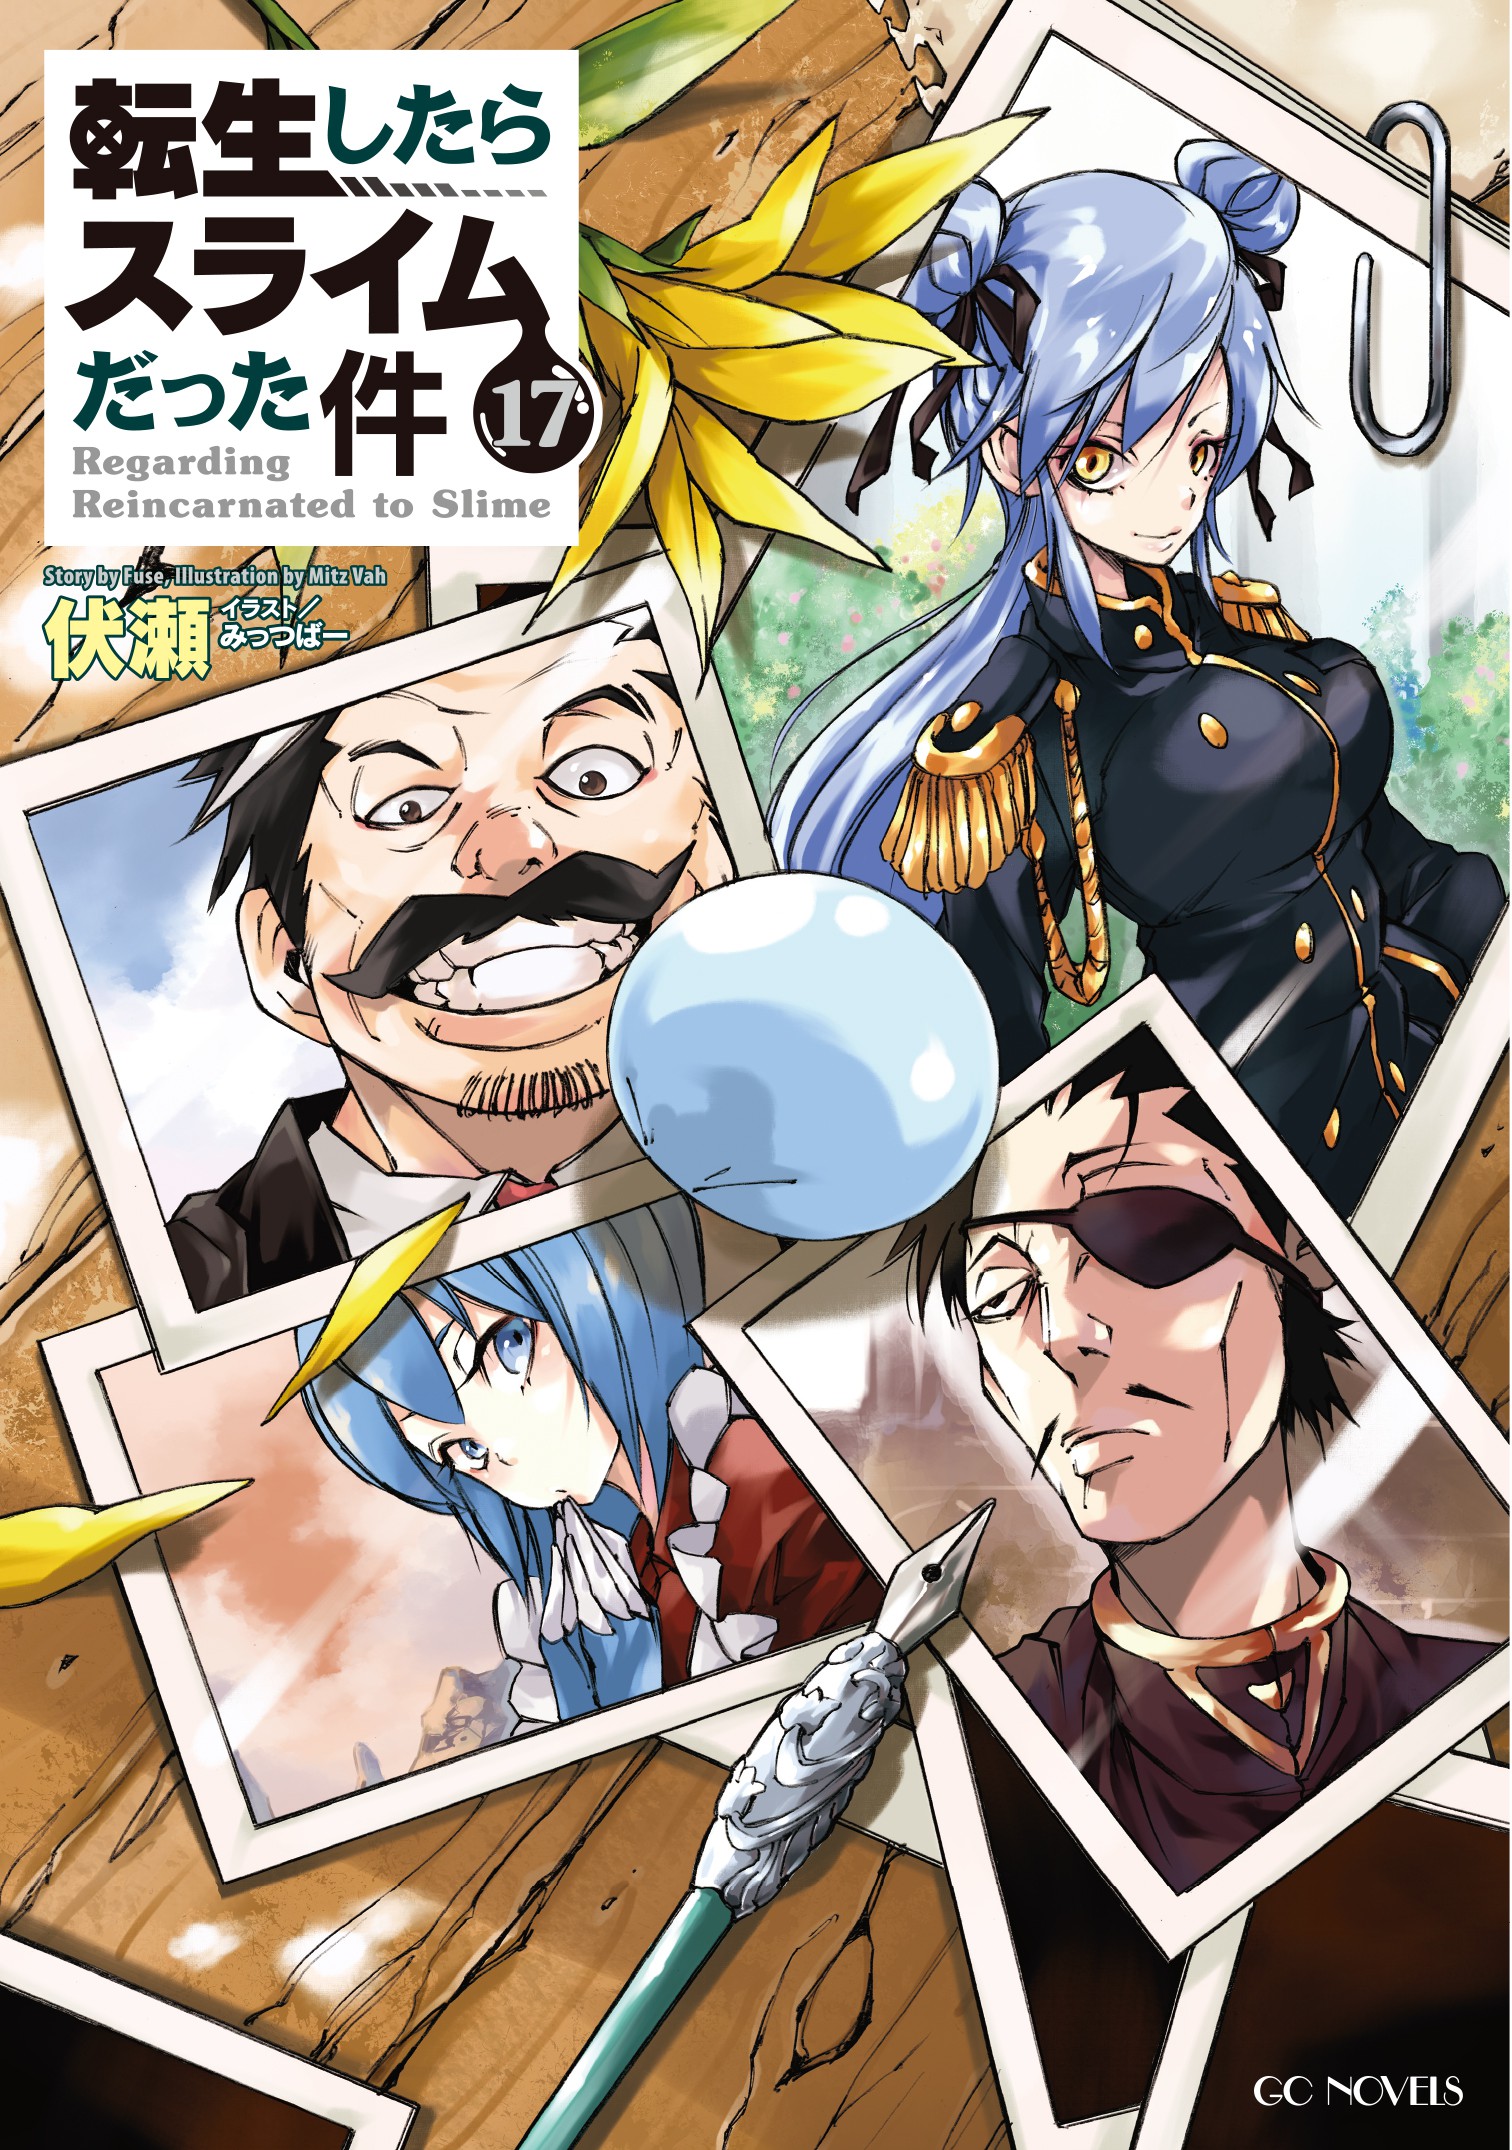 TENSEI SHITARA SLIME DATTA KEN in Light Novel – Review manga online for free